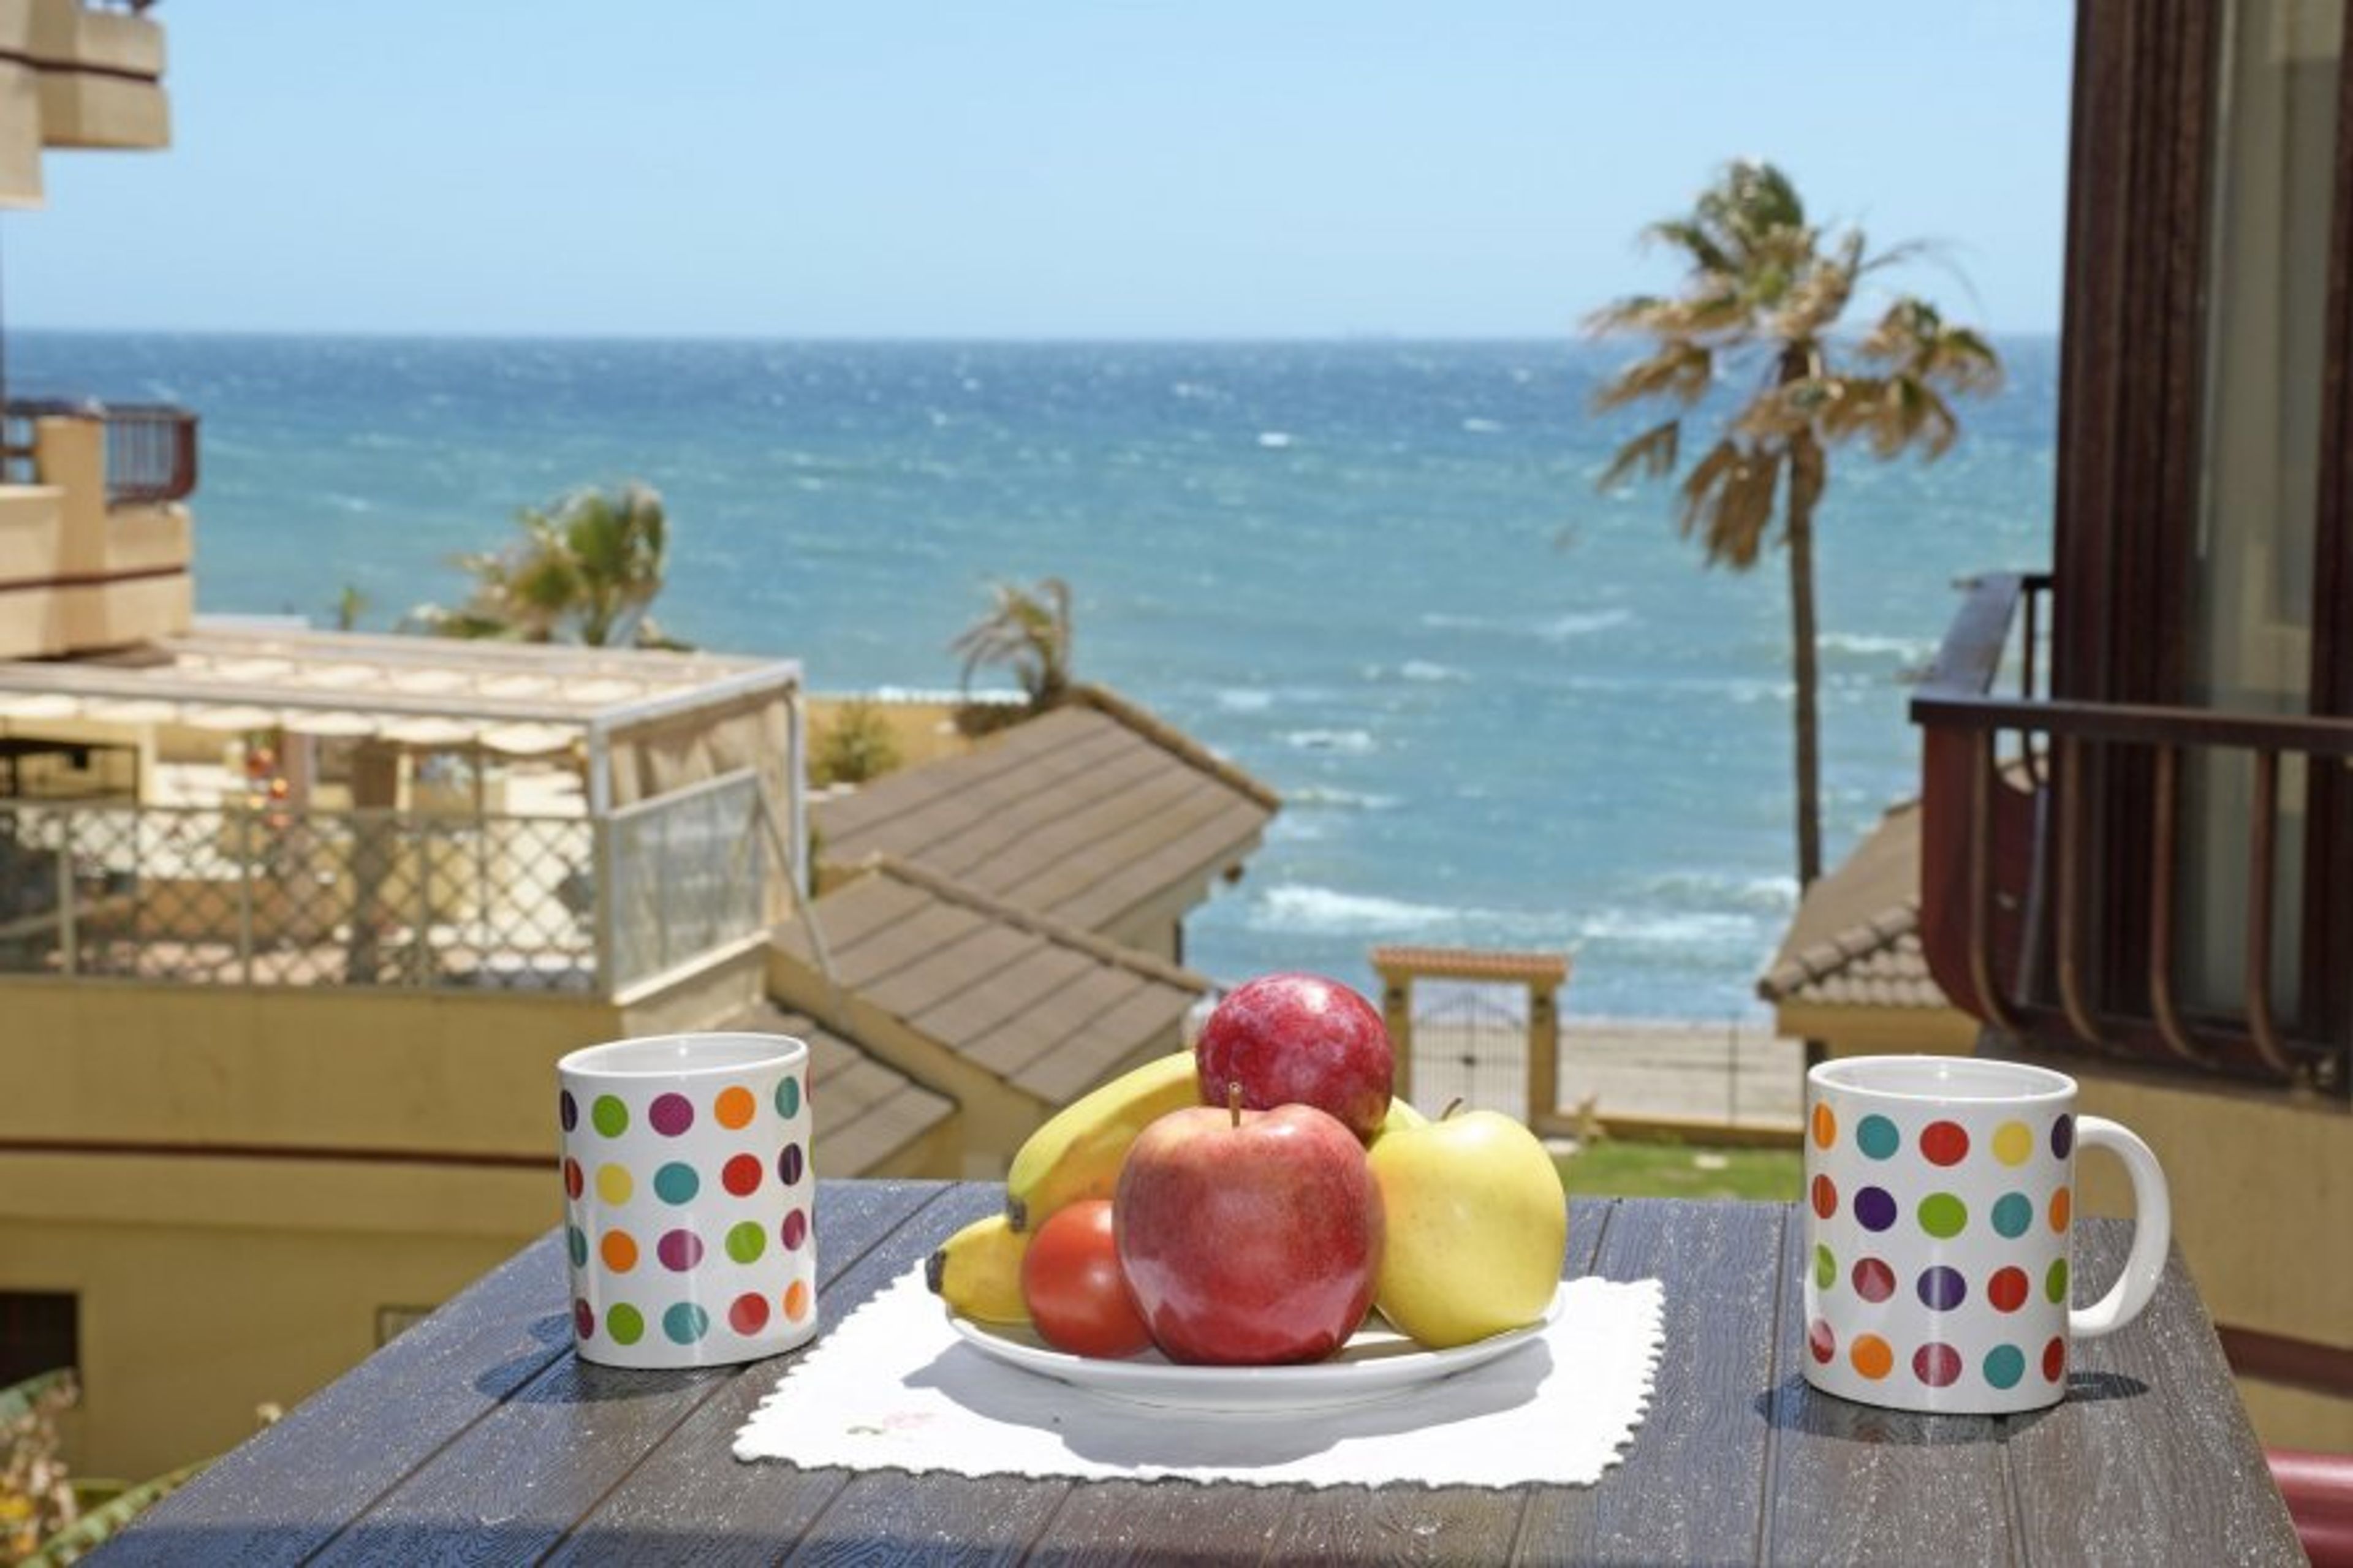 Enjoy your breakfast on the terrace.